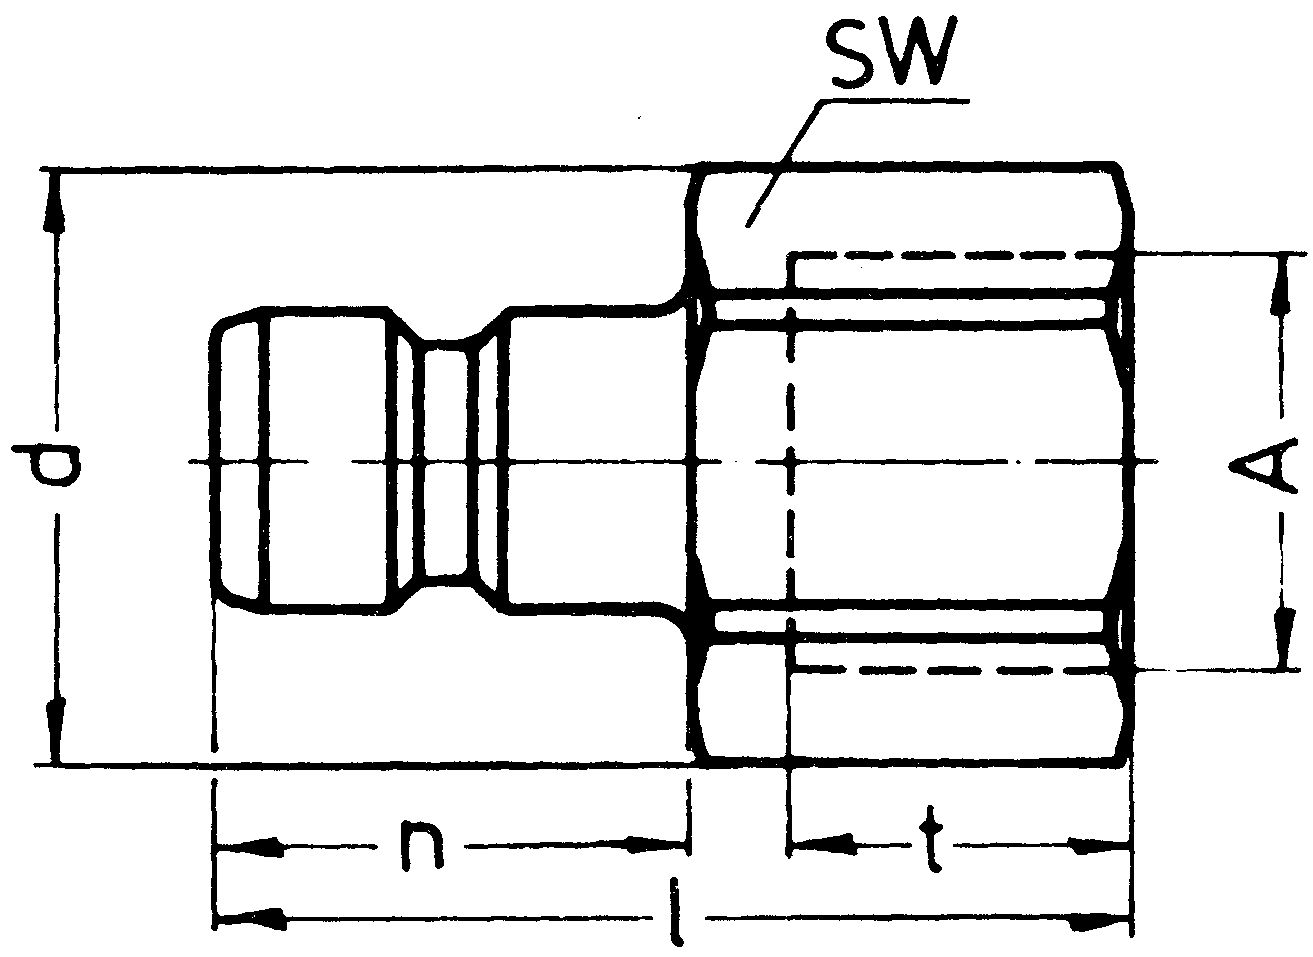 SP-009-1-WR521-01-EB